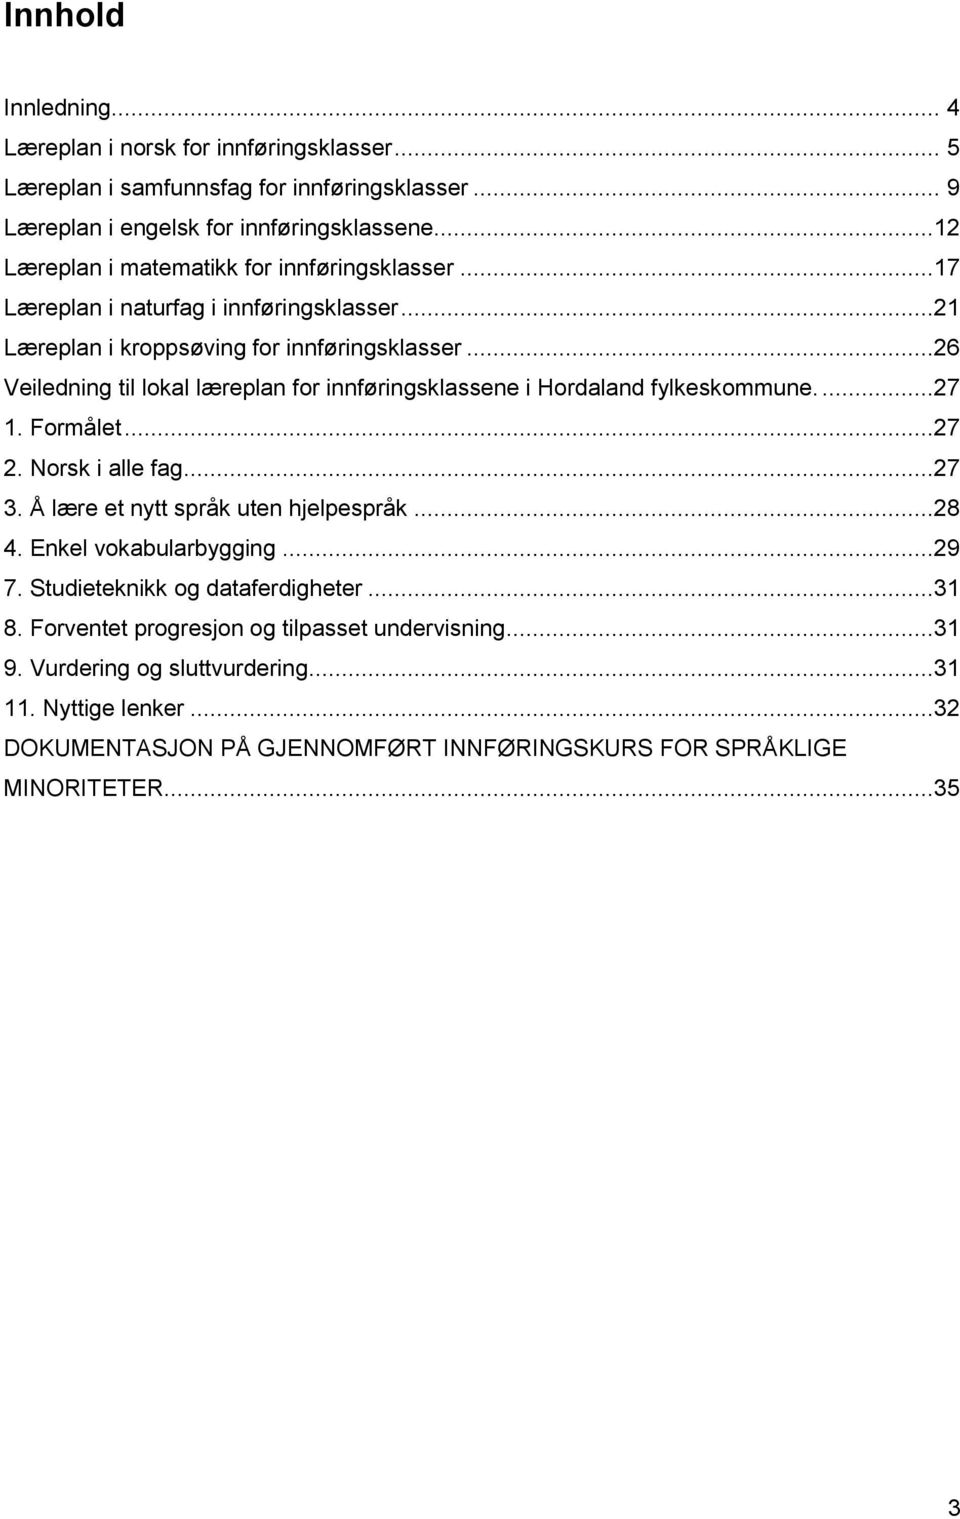 ..26 Veiledning til lokal læreplan for innføringsklassene i Hordaland fylkeskommune....27 1. Formålet...27 2. Norsk i alle fag...27 3. Å lære et nytt språk uten hjelpespråk...28 4.